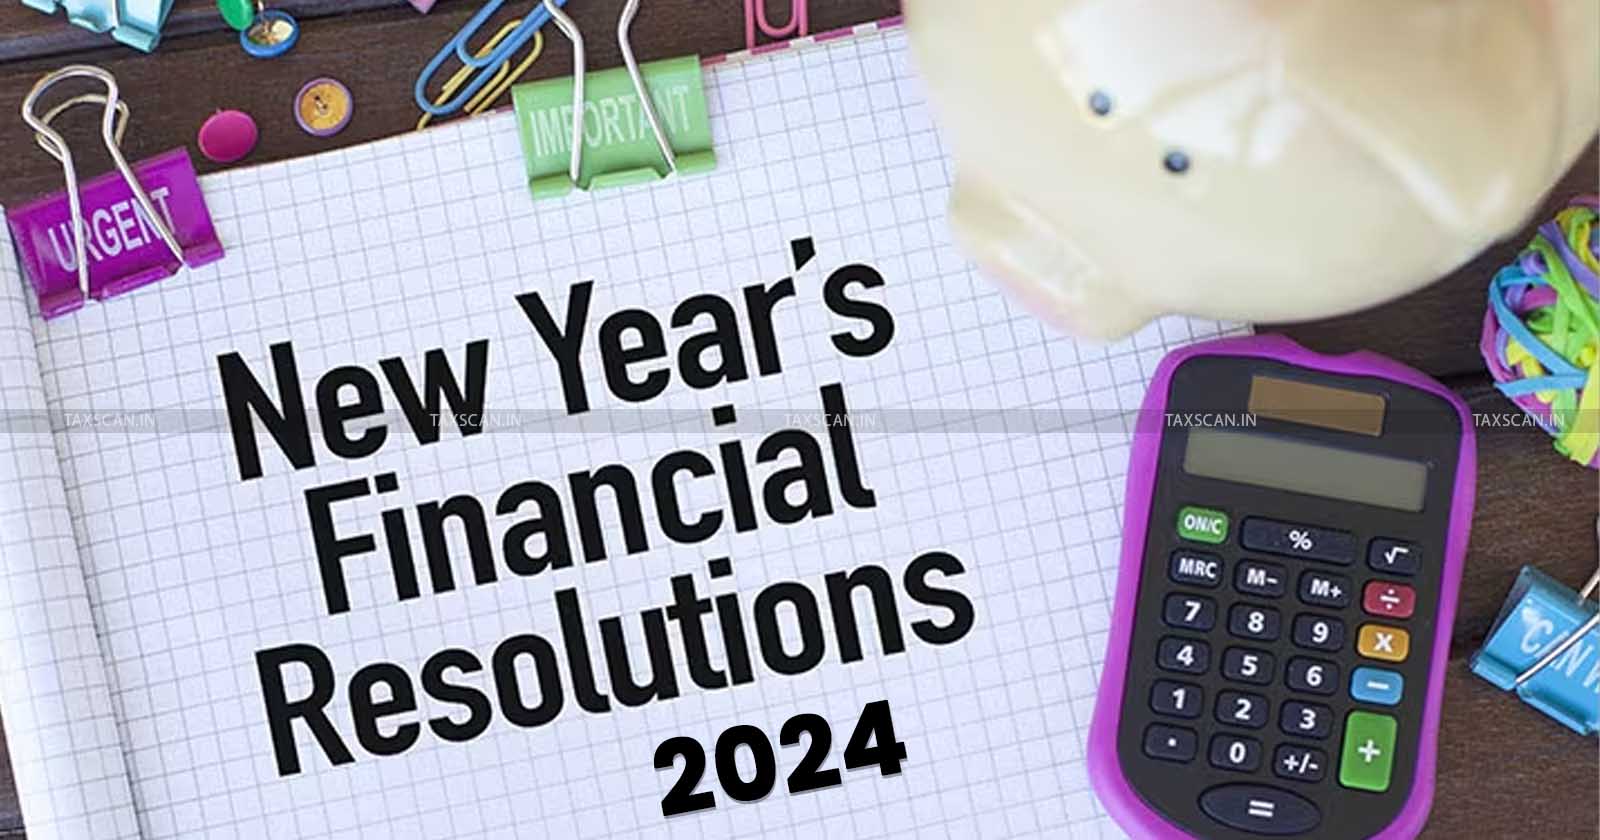 Top 10 Financial Resolutions - Top 10 Financial Resolutions for New Year 2024 - 10 Financial Resolutions for New Year - Financial Resolutions for New Year 2024 - TAXSCAN